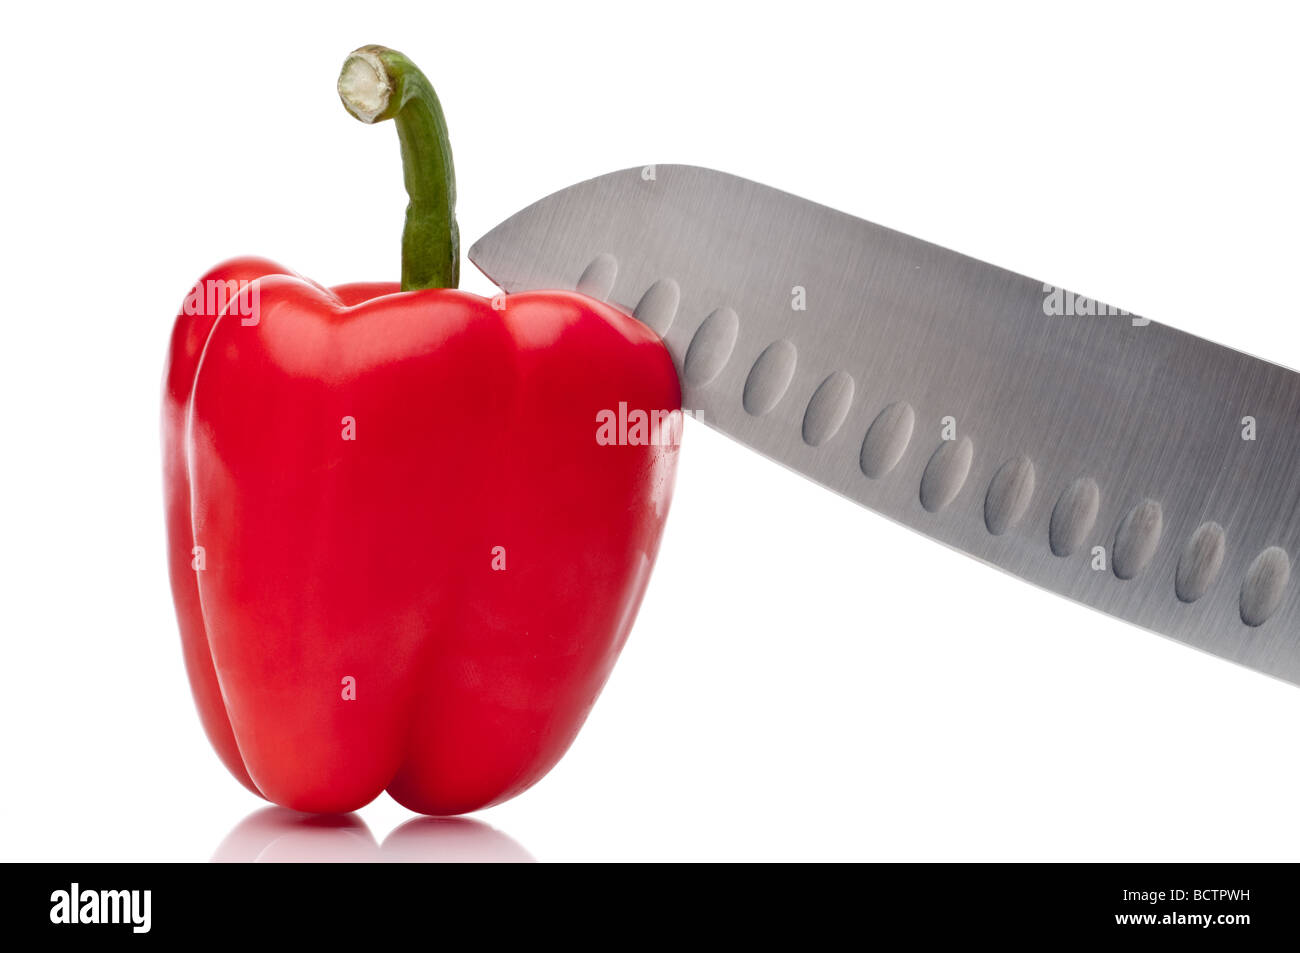 Un'immagine orizzontale di un peperone rosso bei ng affettato su bianco Foto Stock